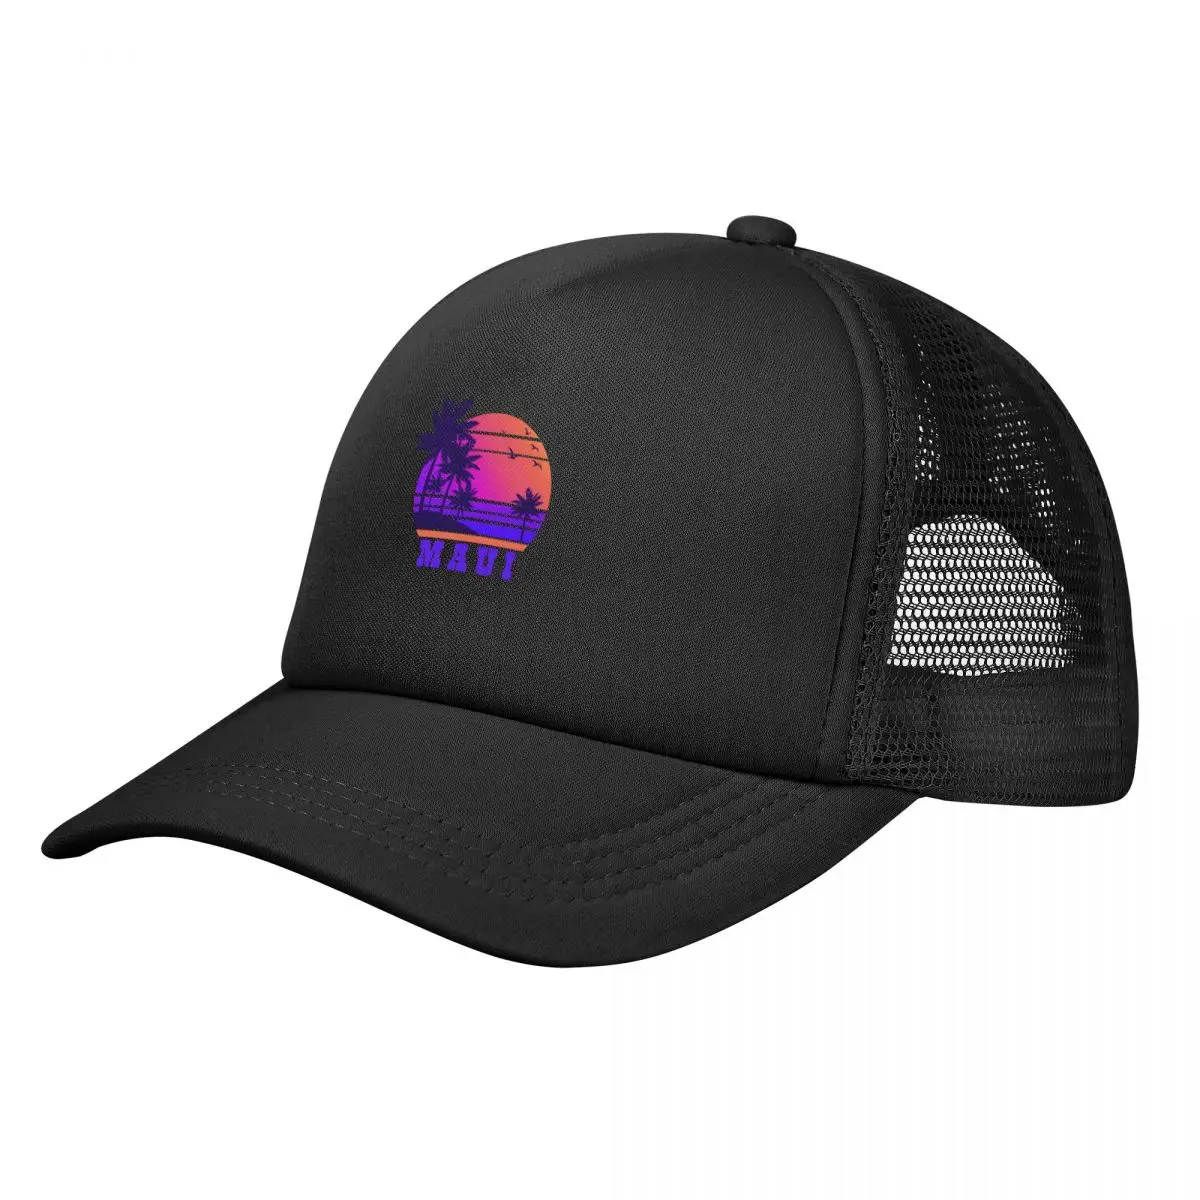 Maui Purple Baseball Cap custom Hat Golf Hat Man Dropshipping Gentleman Hat Women's Beach Outlet Men's